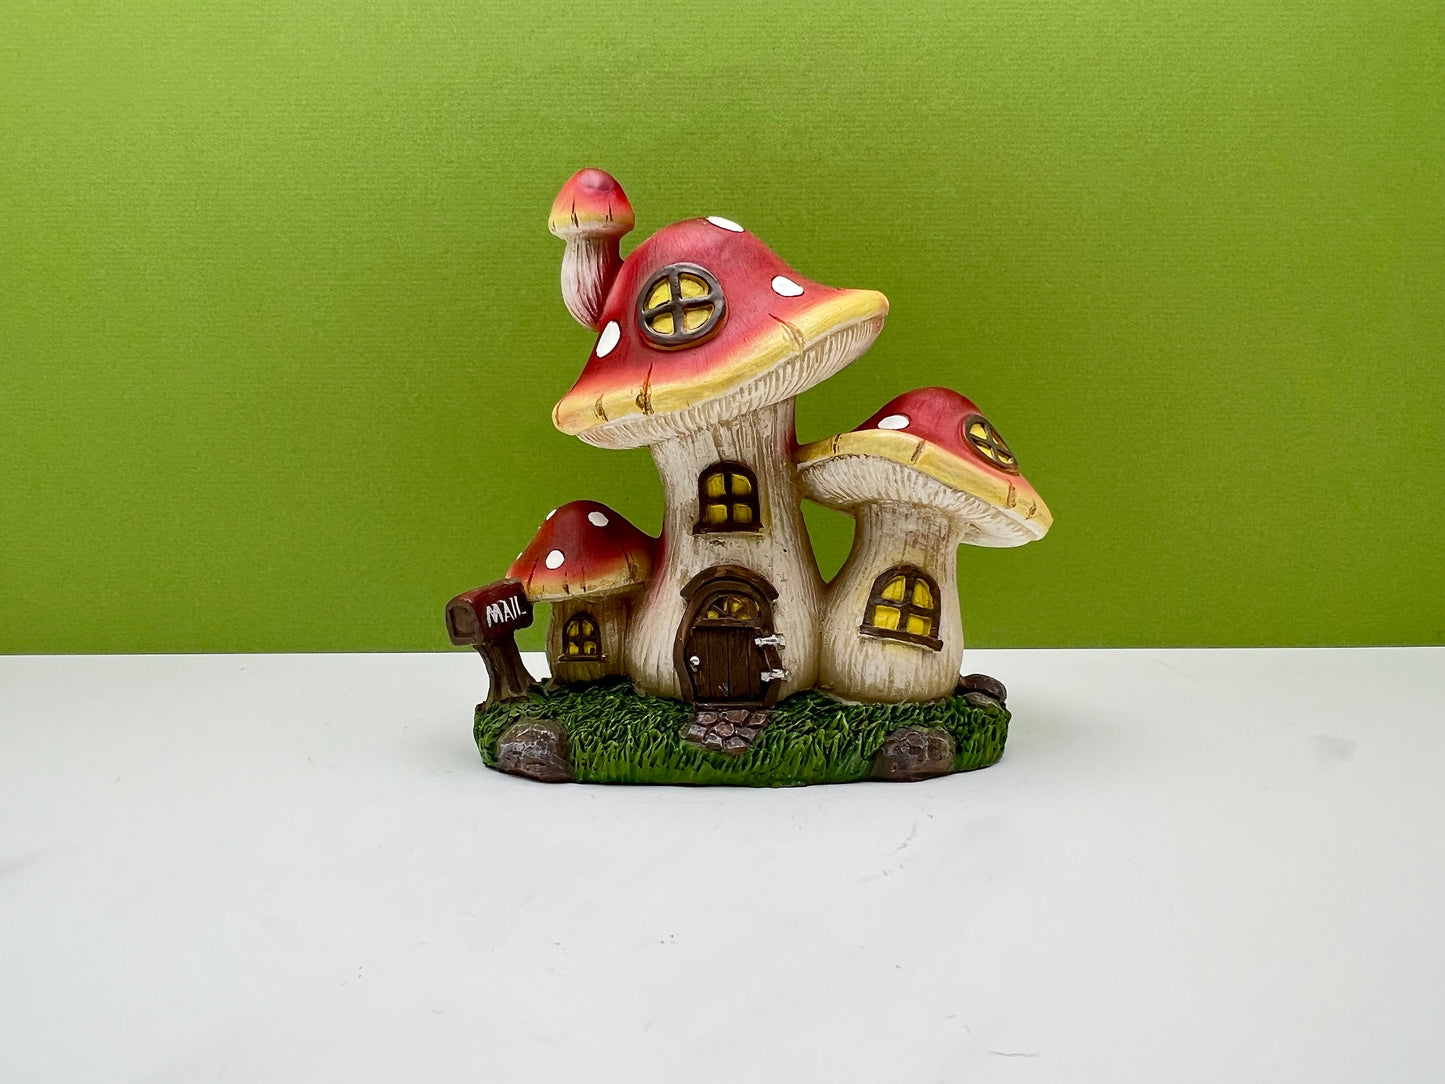 Triple Mushroom House